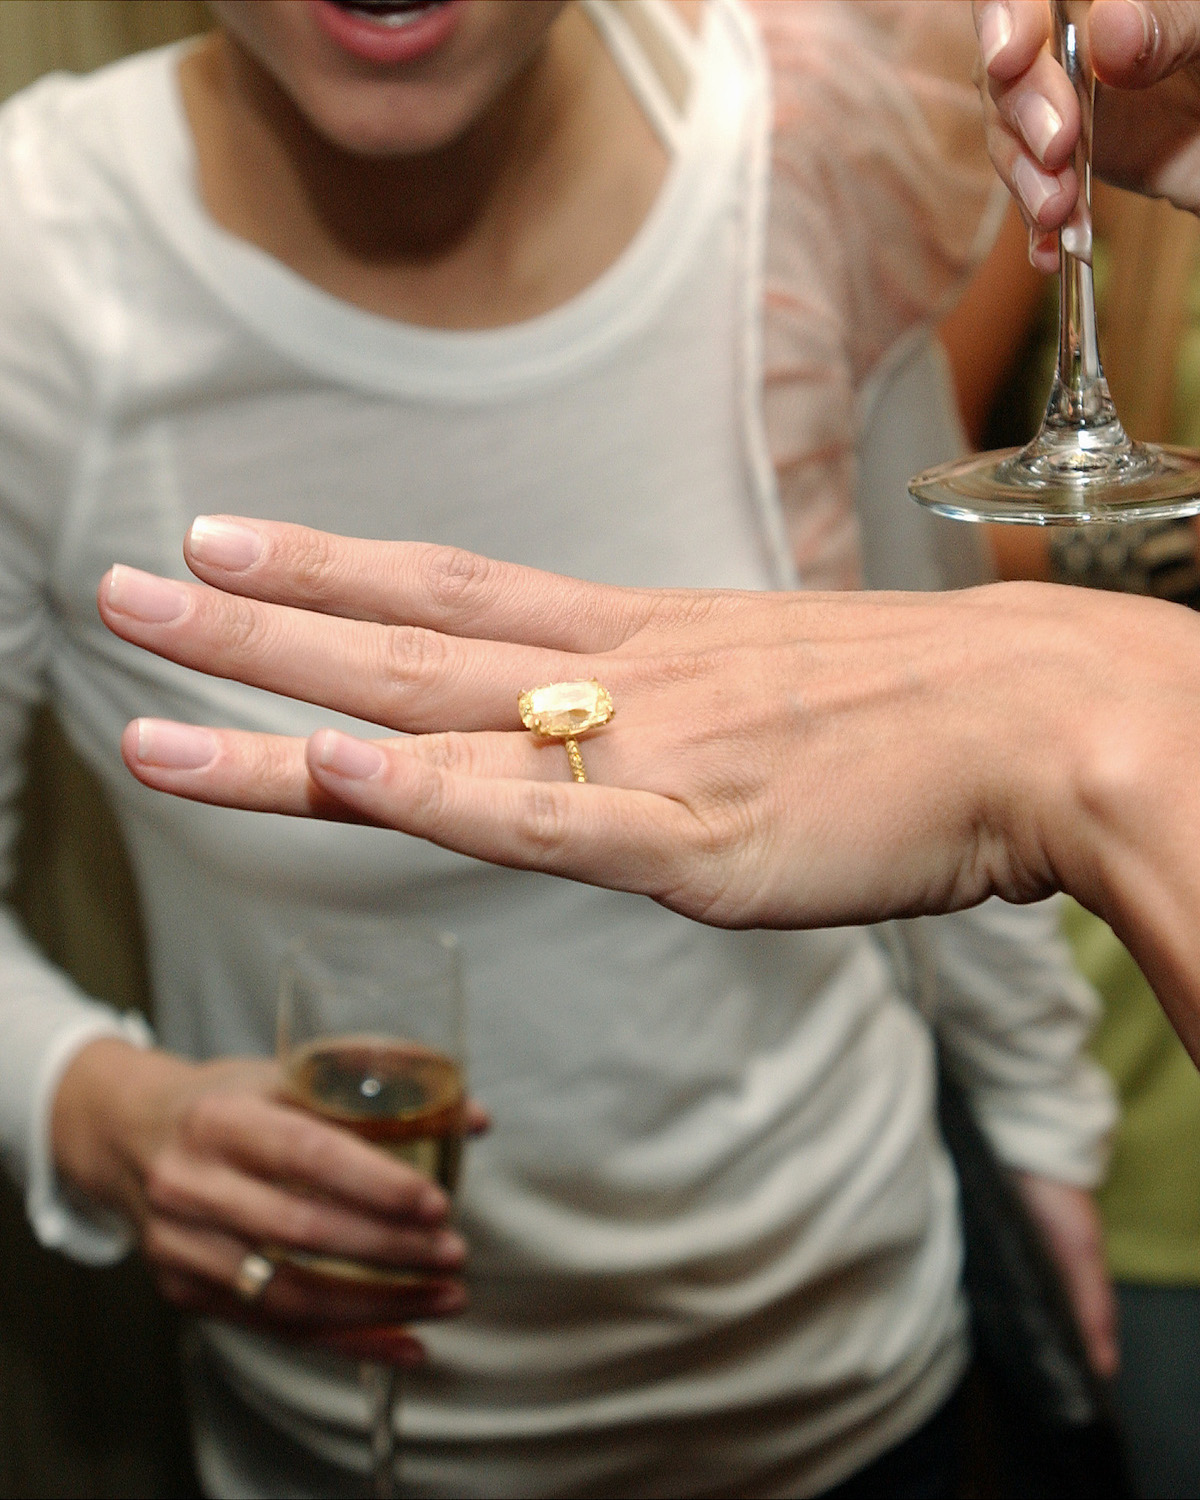 Heidi Klum showing her yellow diamond engagement ring 